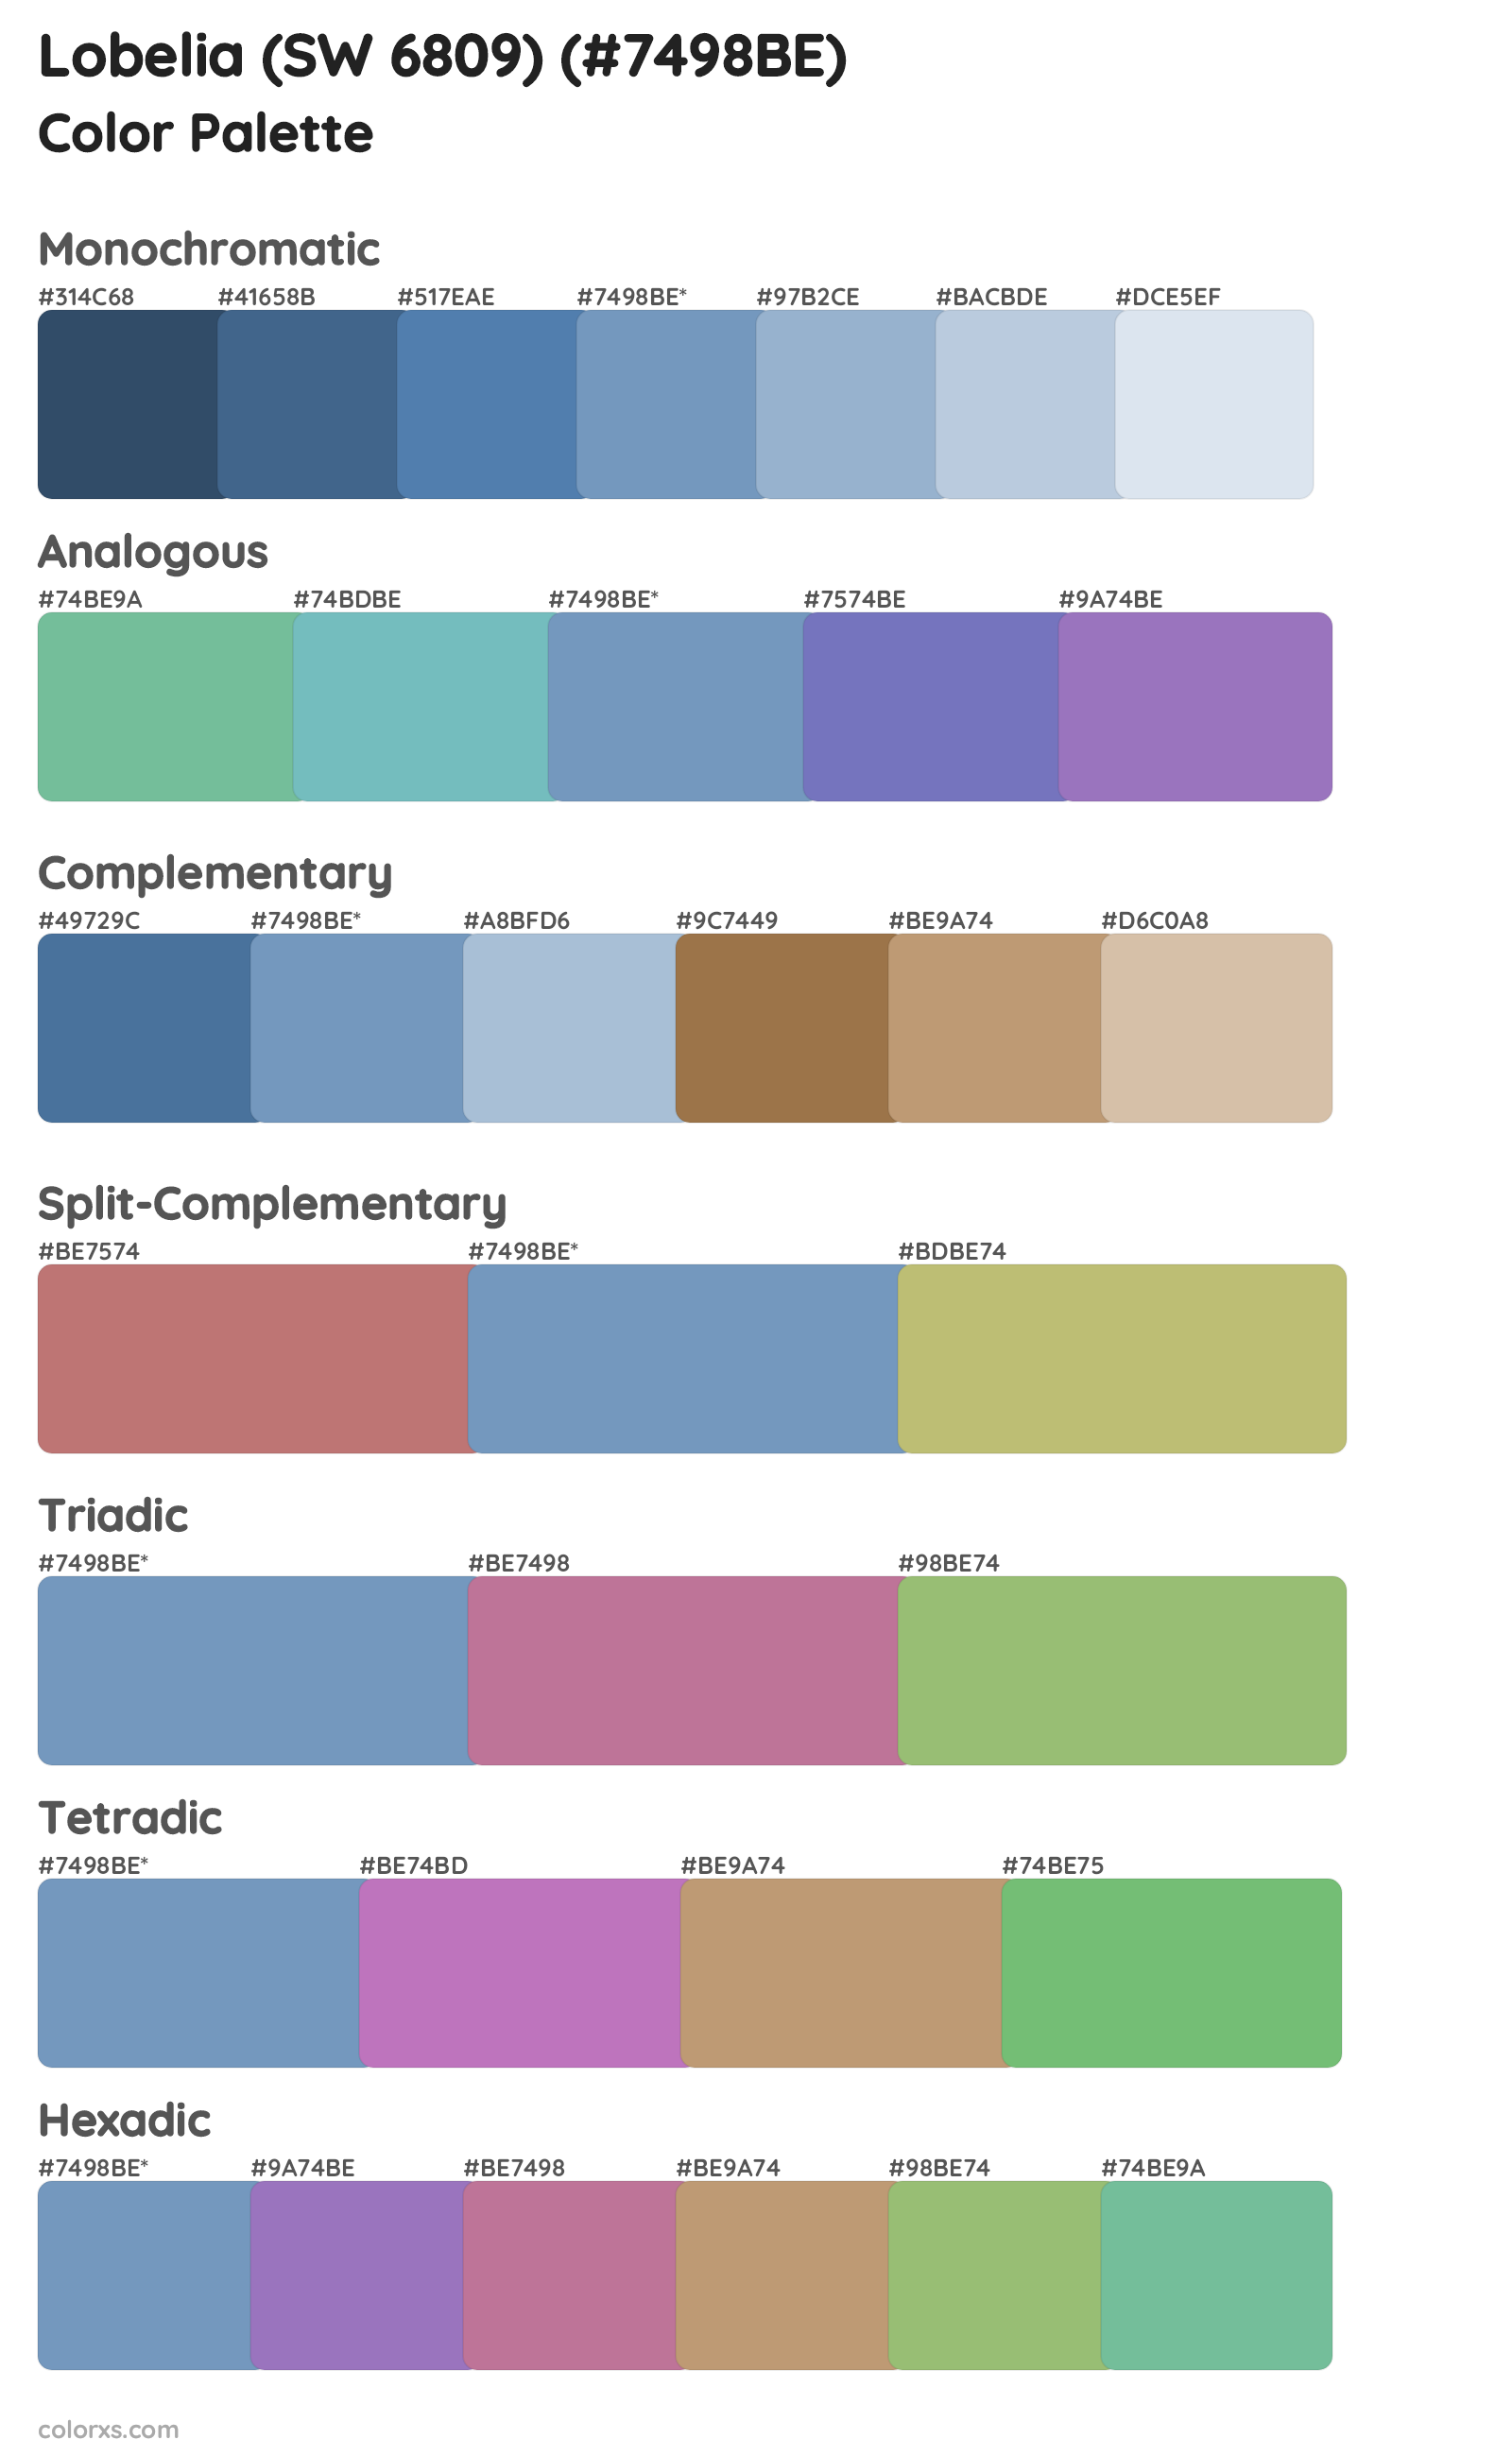 Lobelia (SW 6809) Color Scheme Palettes